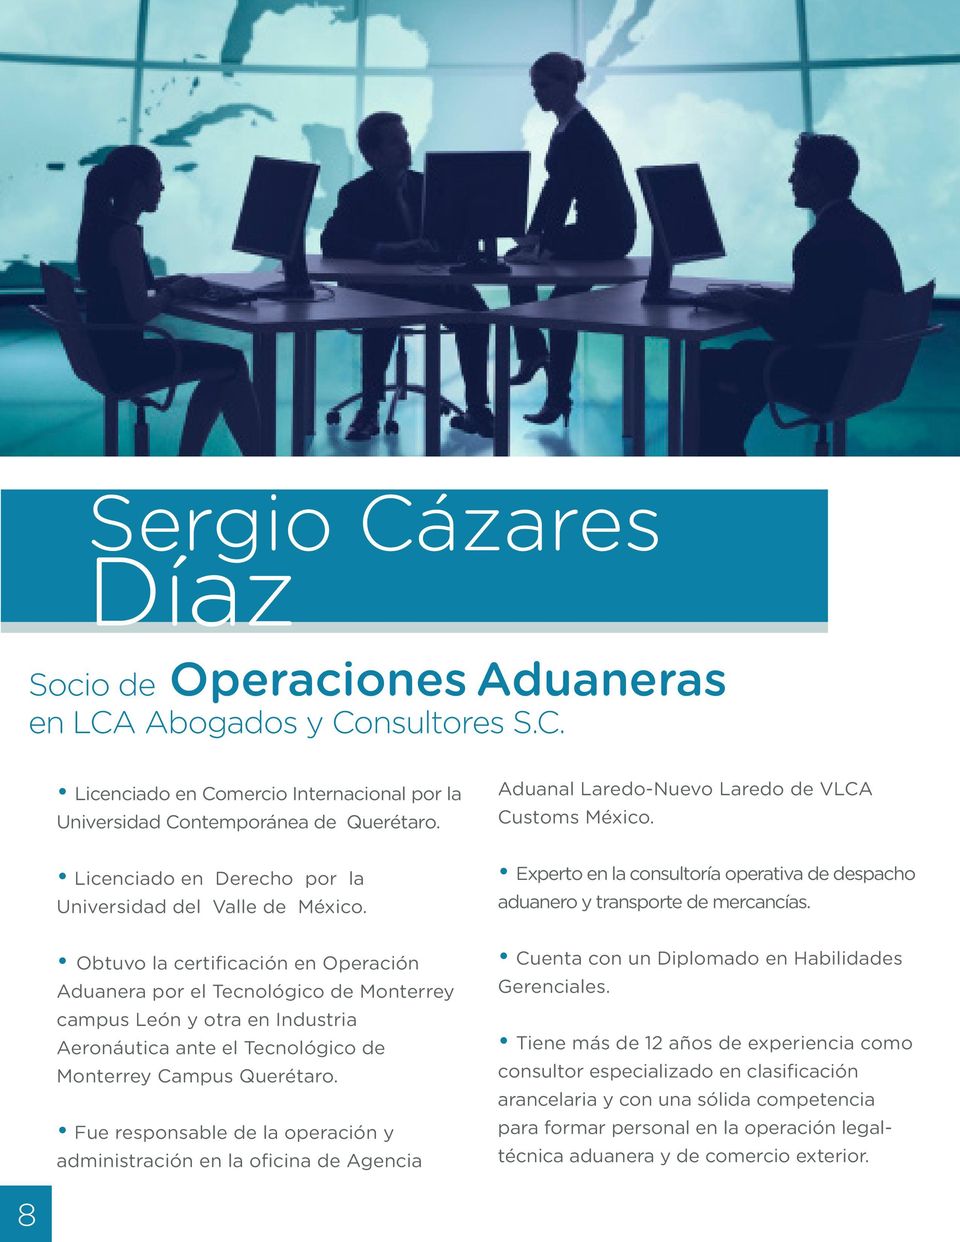 Obtuvo la certificación en Operación Aduanera por el Tecnológico de Monterrey campus León y otra en Industria Aeronáutica ante el Tecnológico de Monterrey Campus Querétaro.